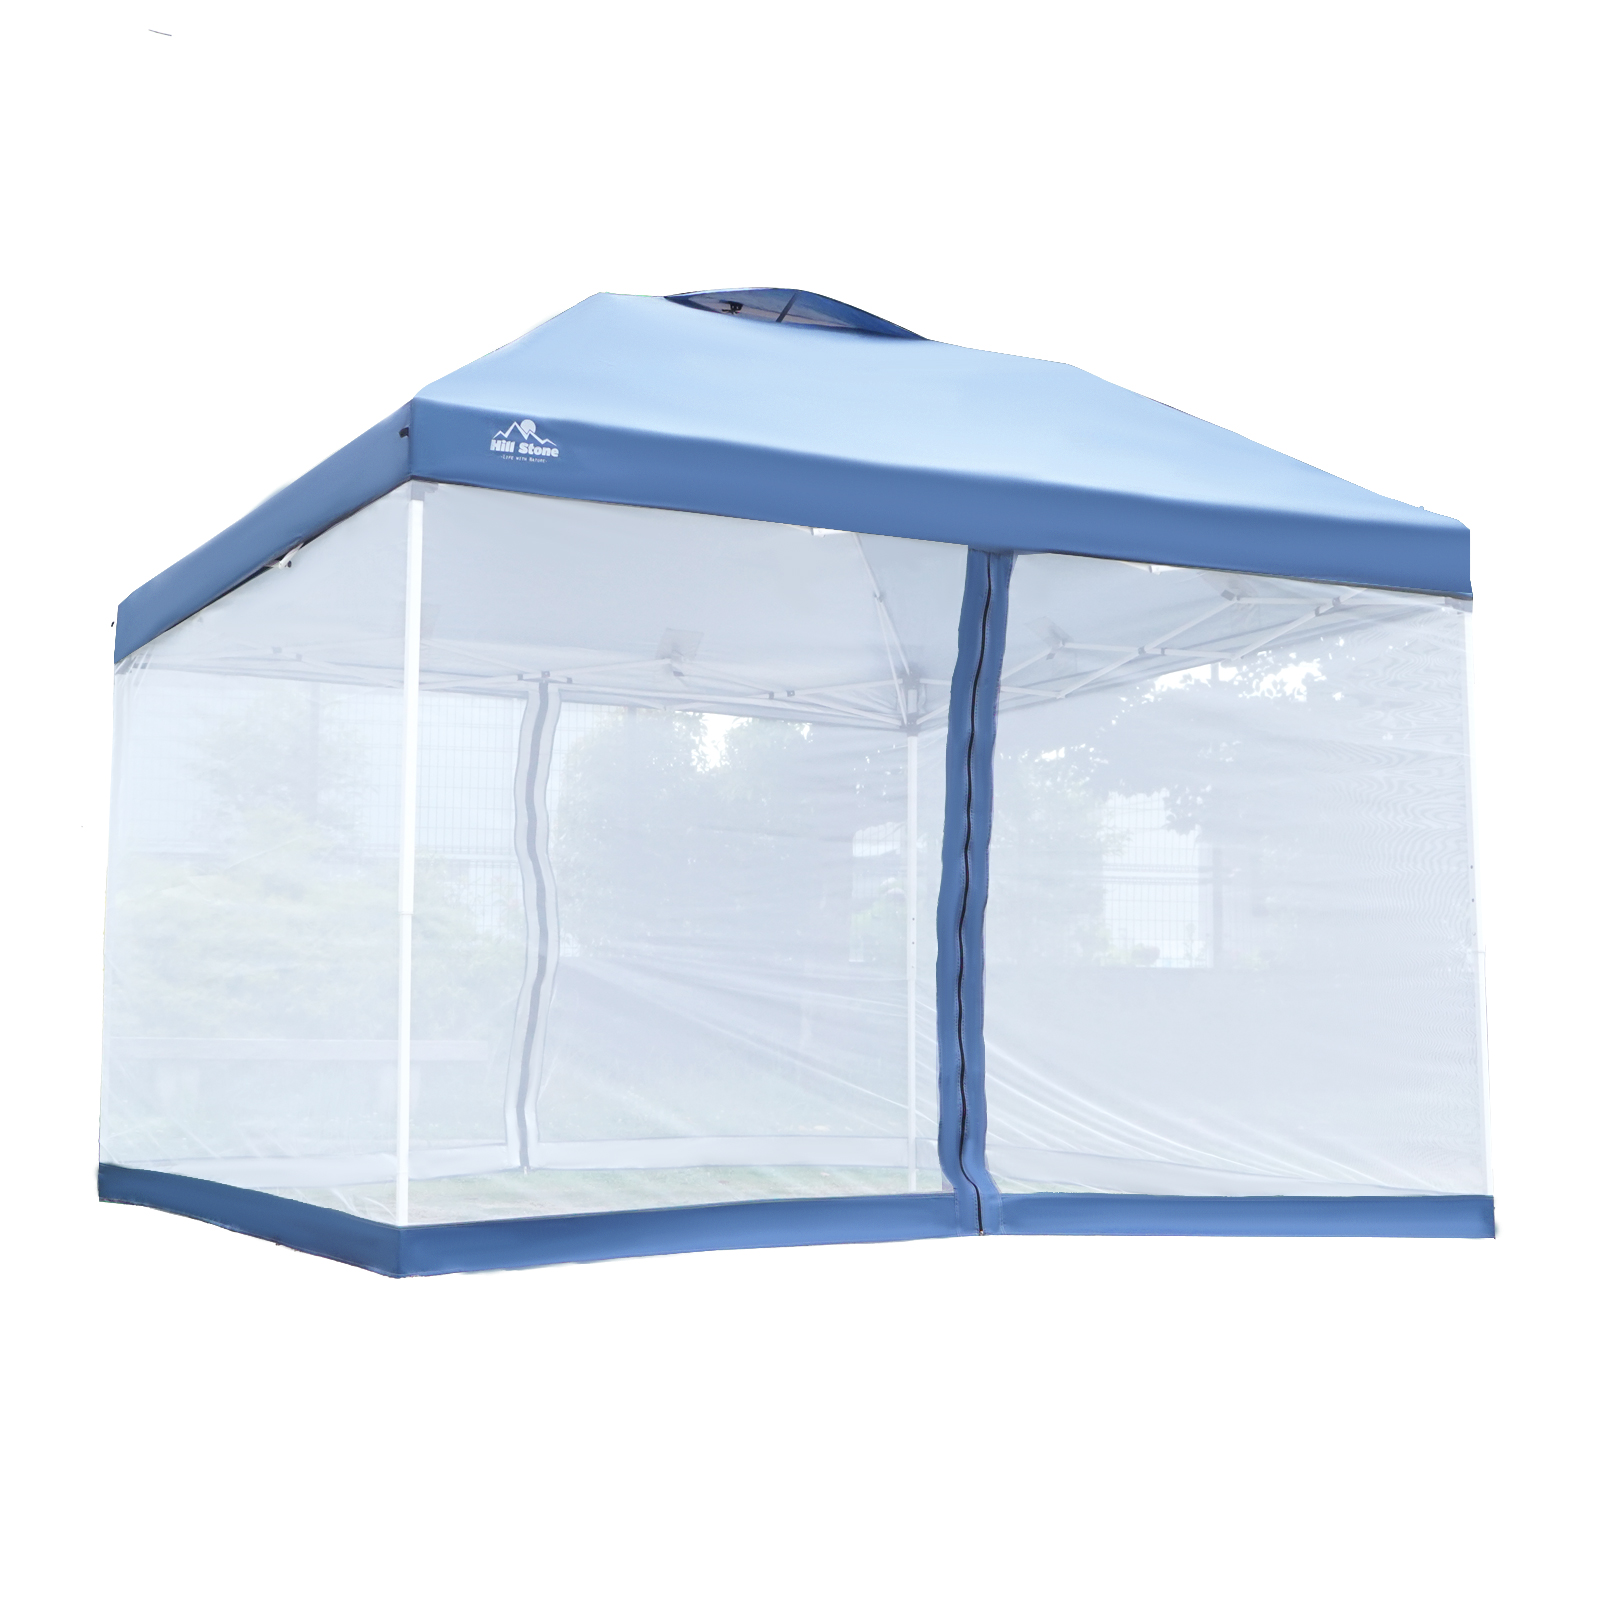 テント タープ 3×3m UV スクリーンタープ セット ワンタッチ タープ